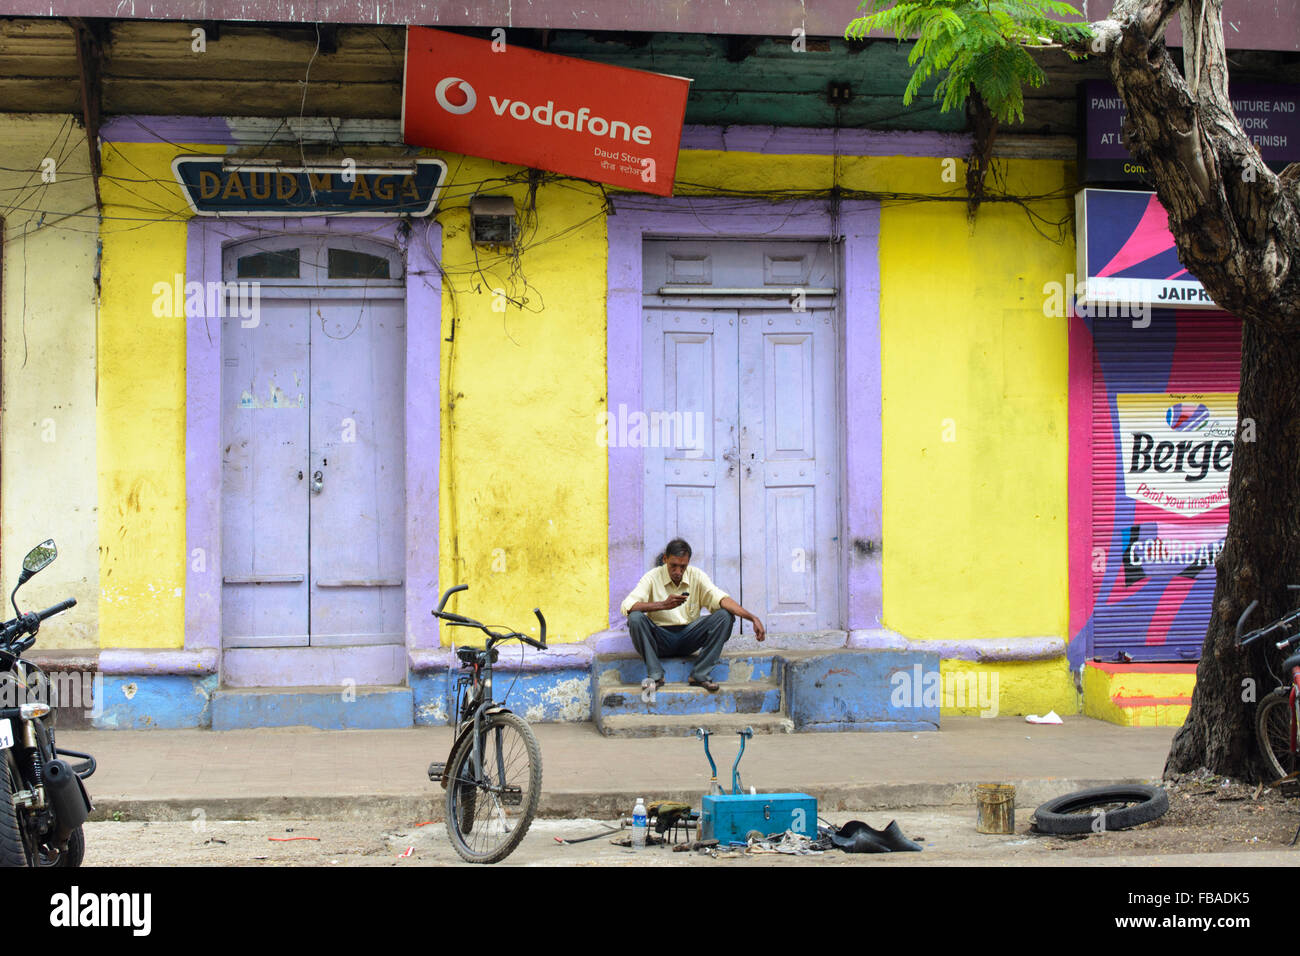 Indian man sitting on steps reading messages téléphone mobile vodafone sous un signe à Panaji (Panjim), Nord de Goa, Inde Banque D'Images